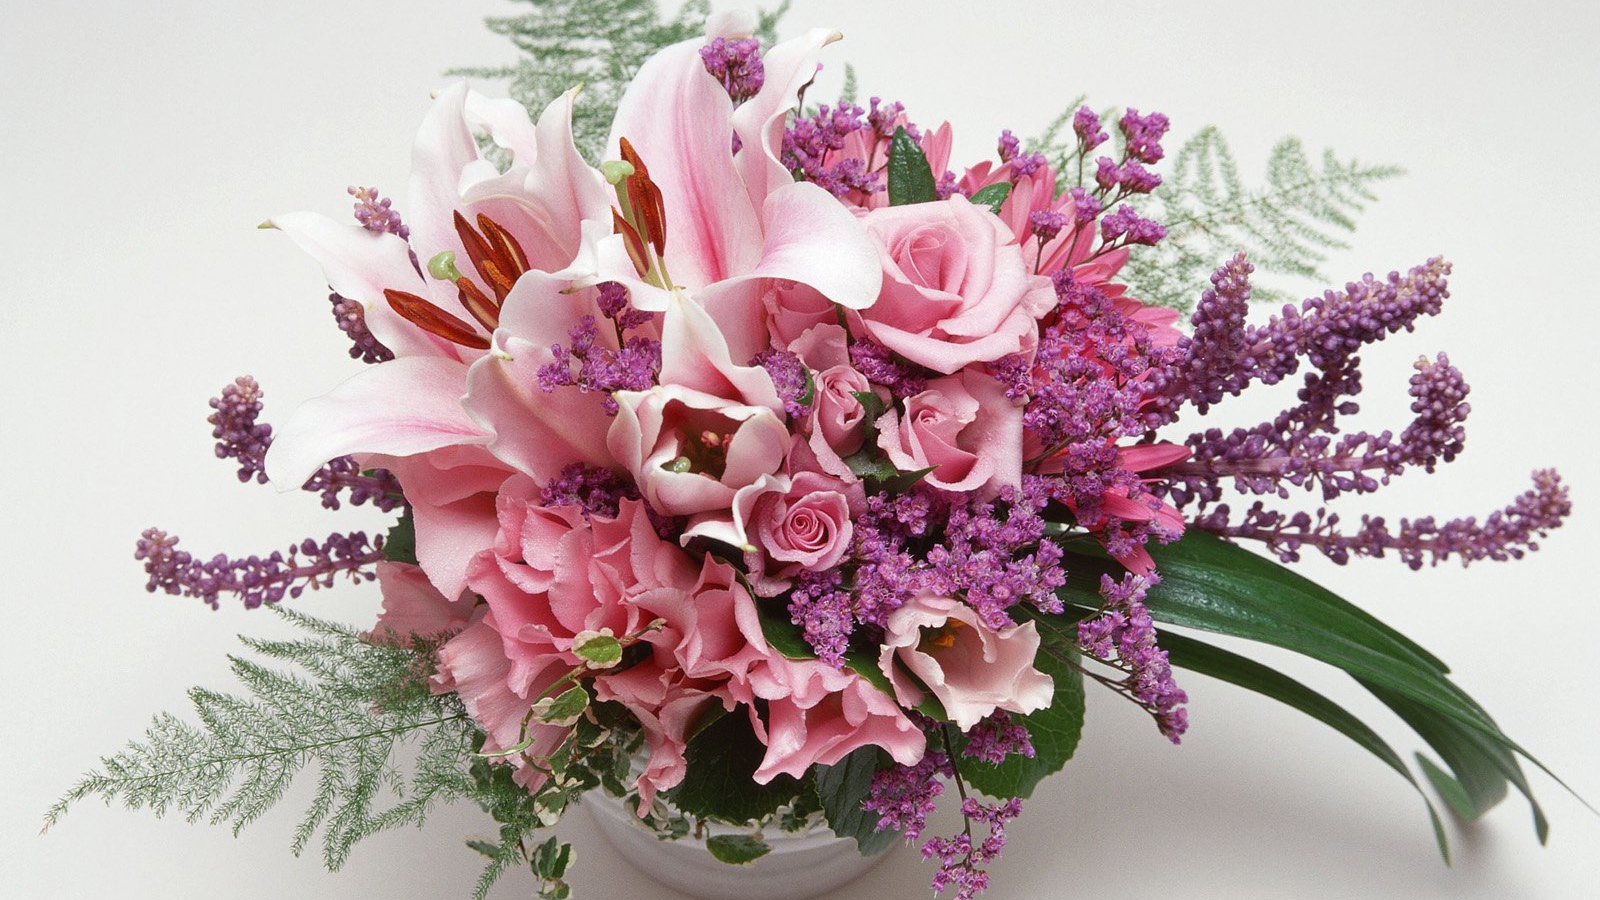 Flower vase on March 8